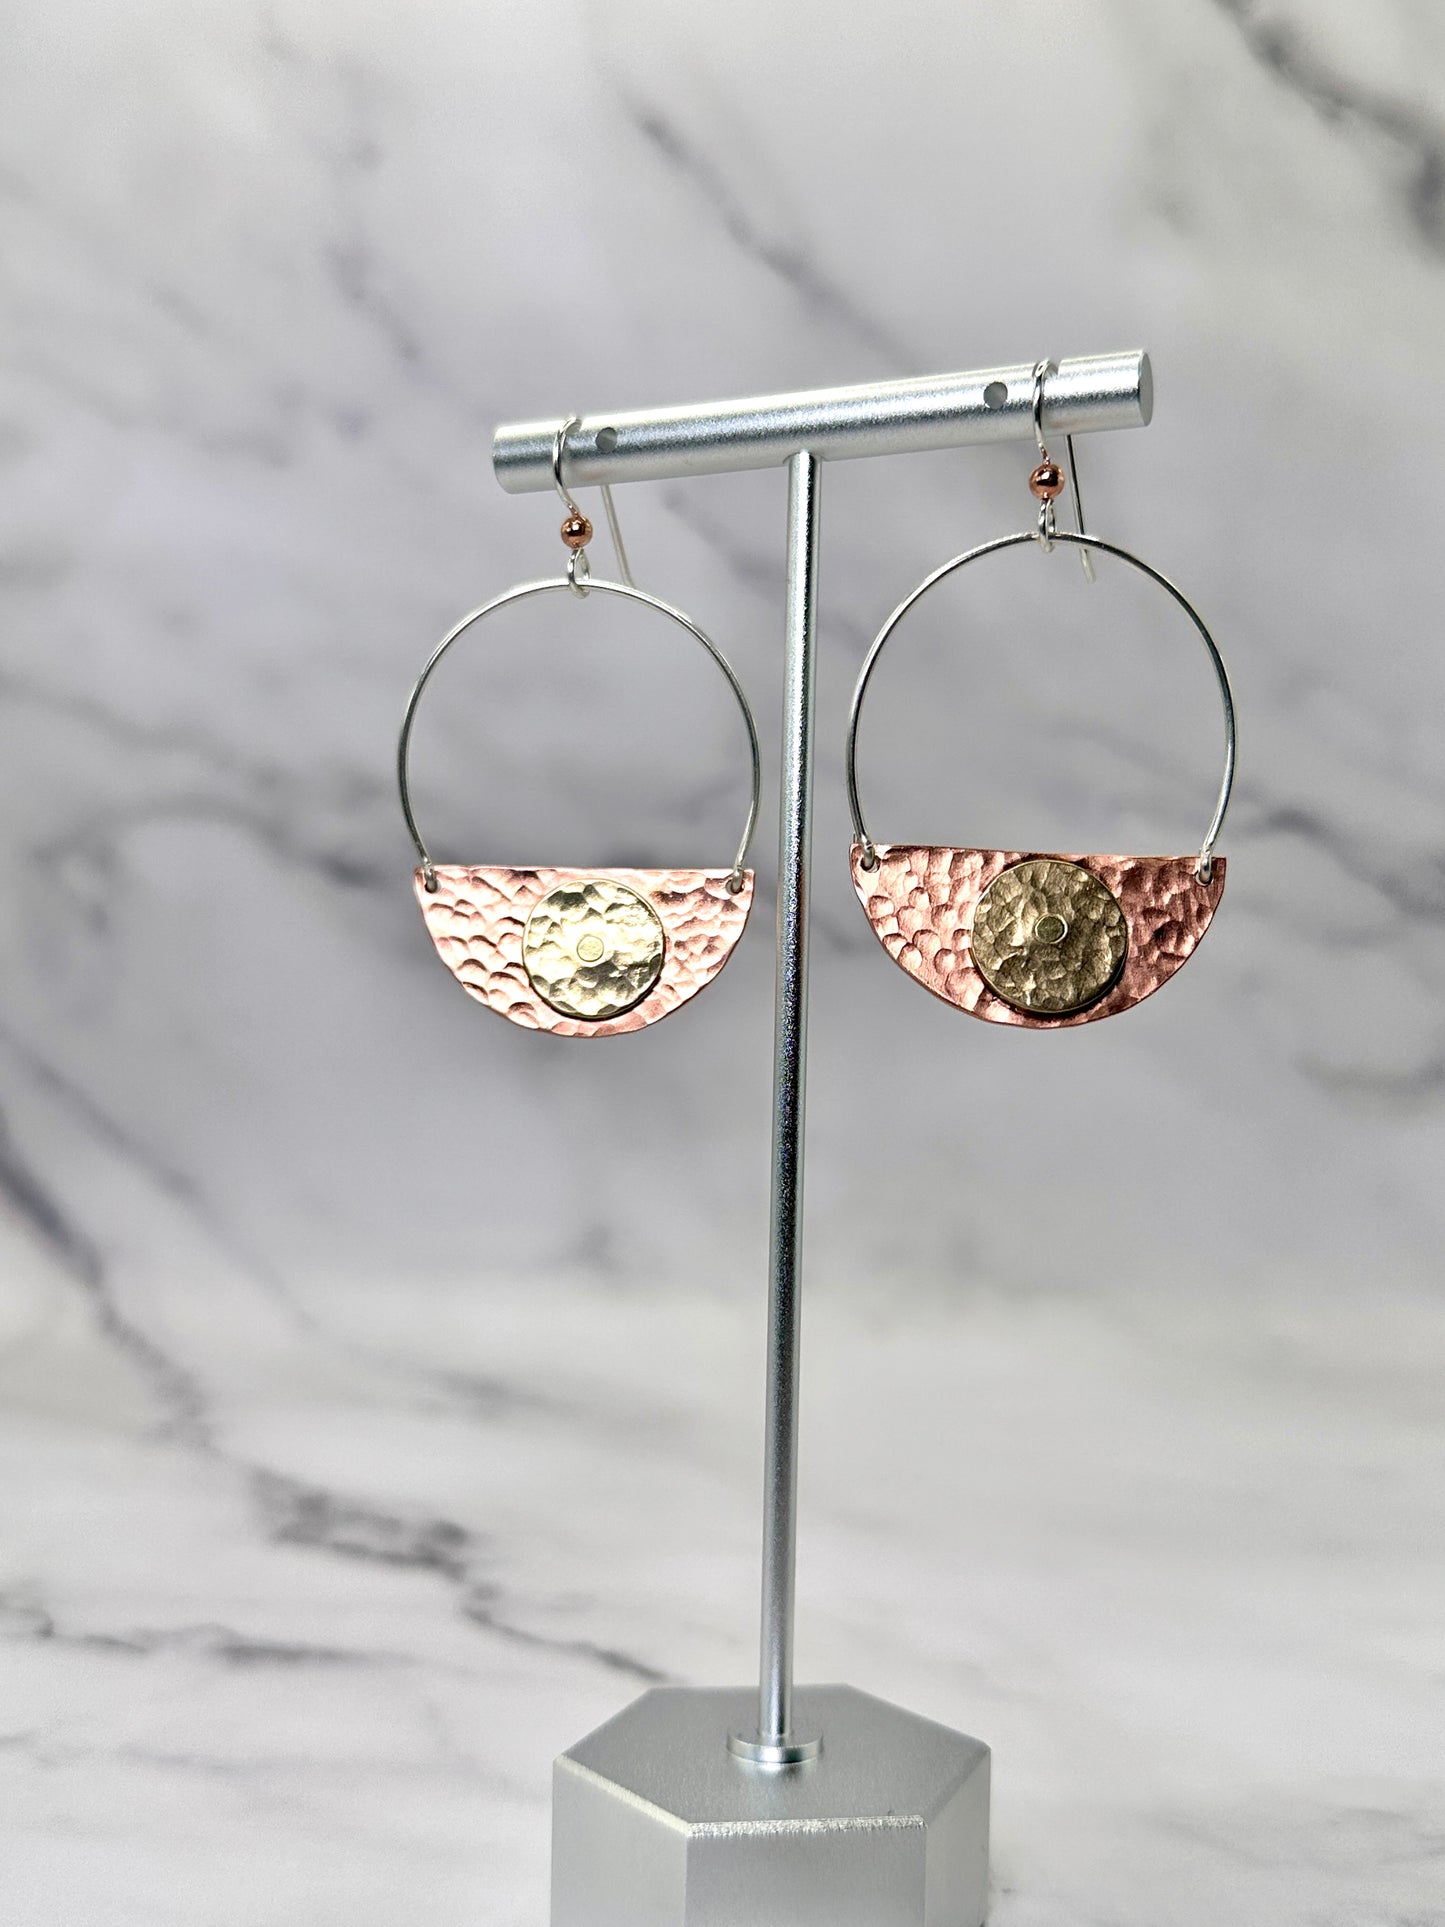 Copper & Brass Hanging Earrings